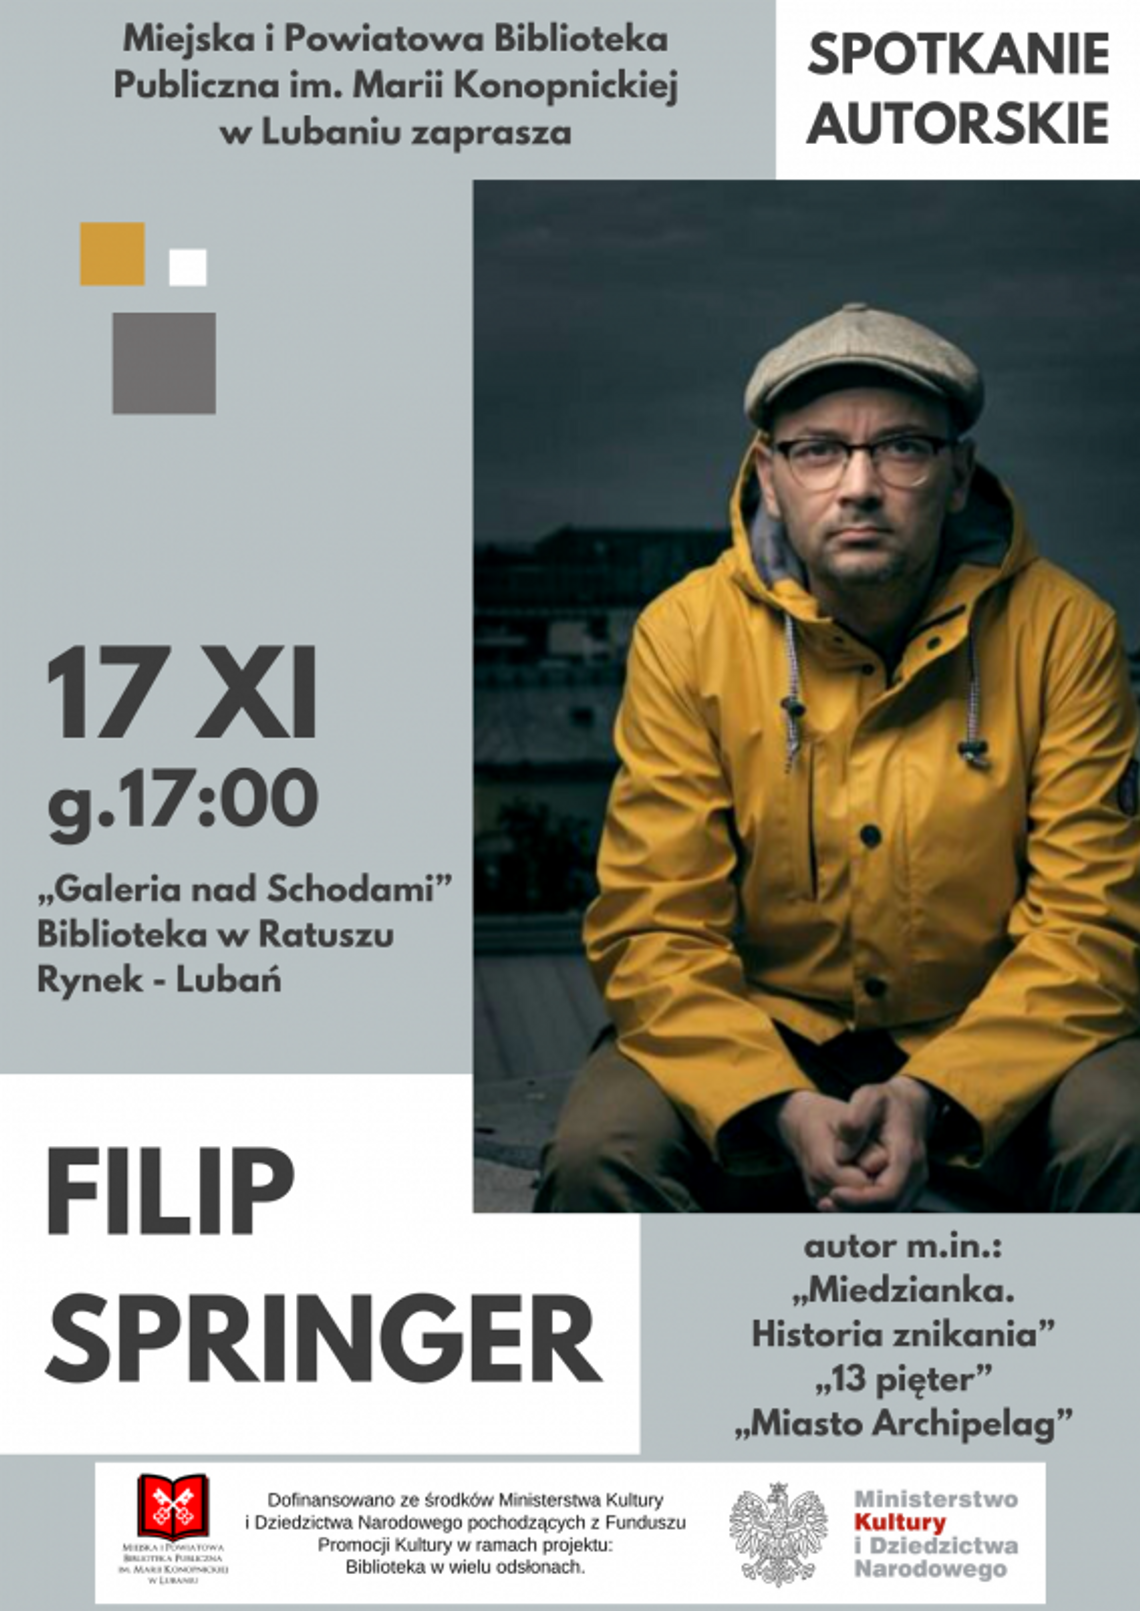 Biblioteka zaprasza na spotkanie autorskie z Filipem Springerem